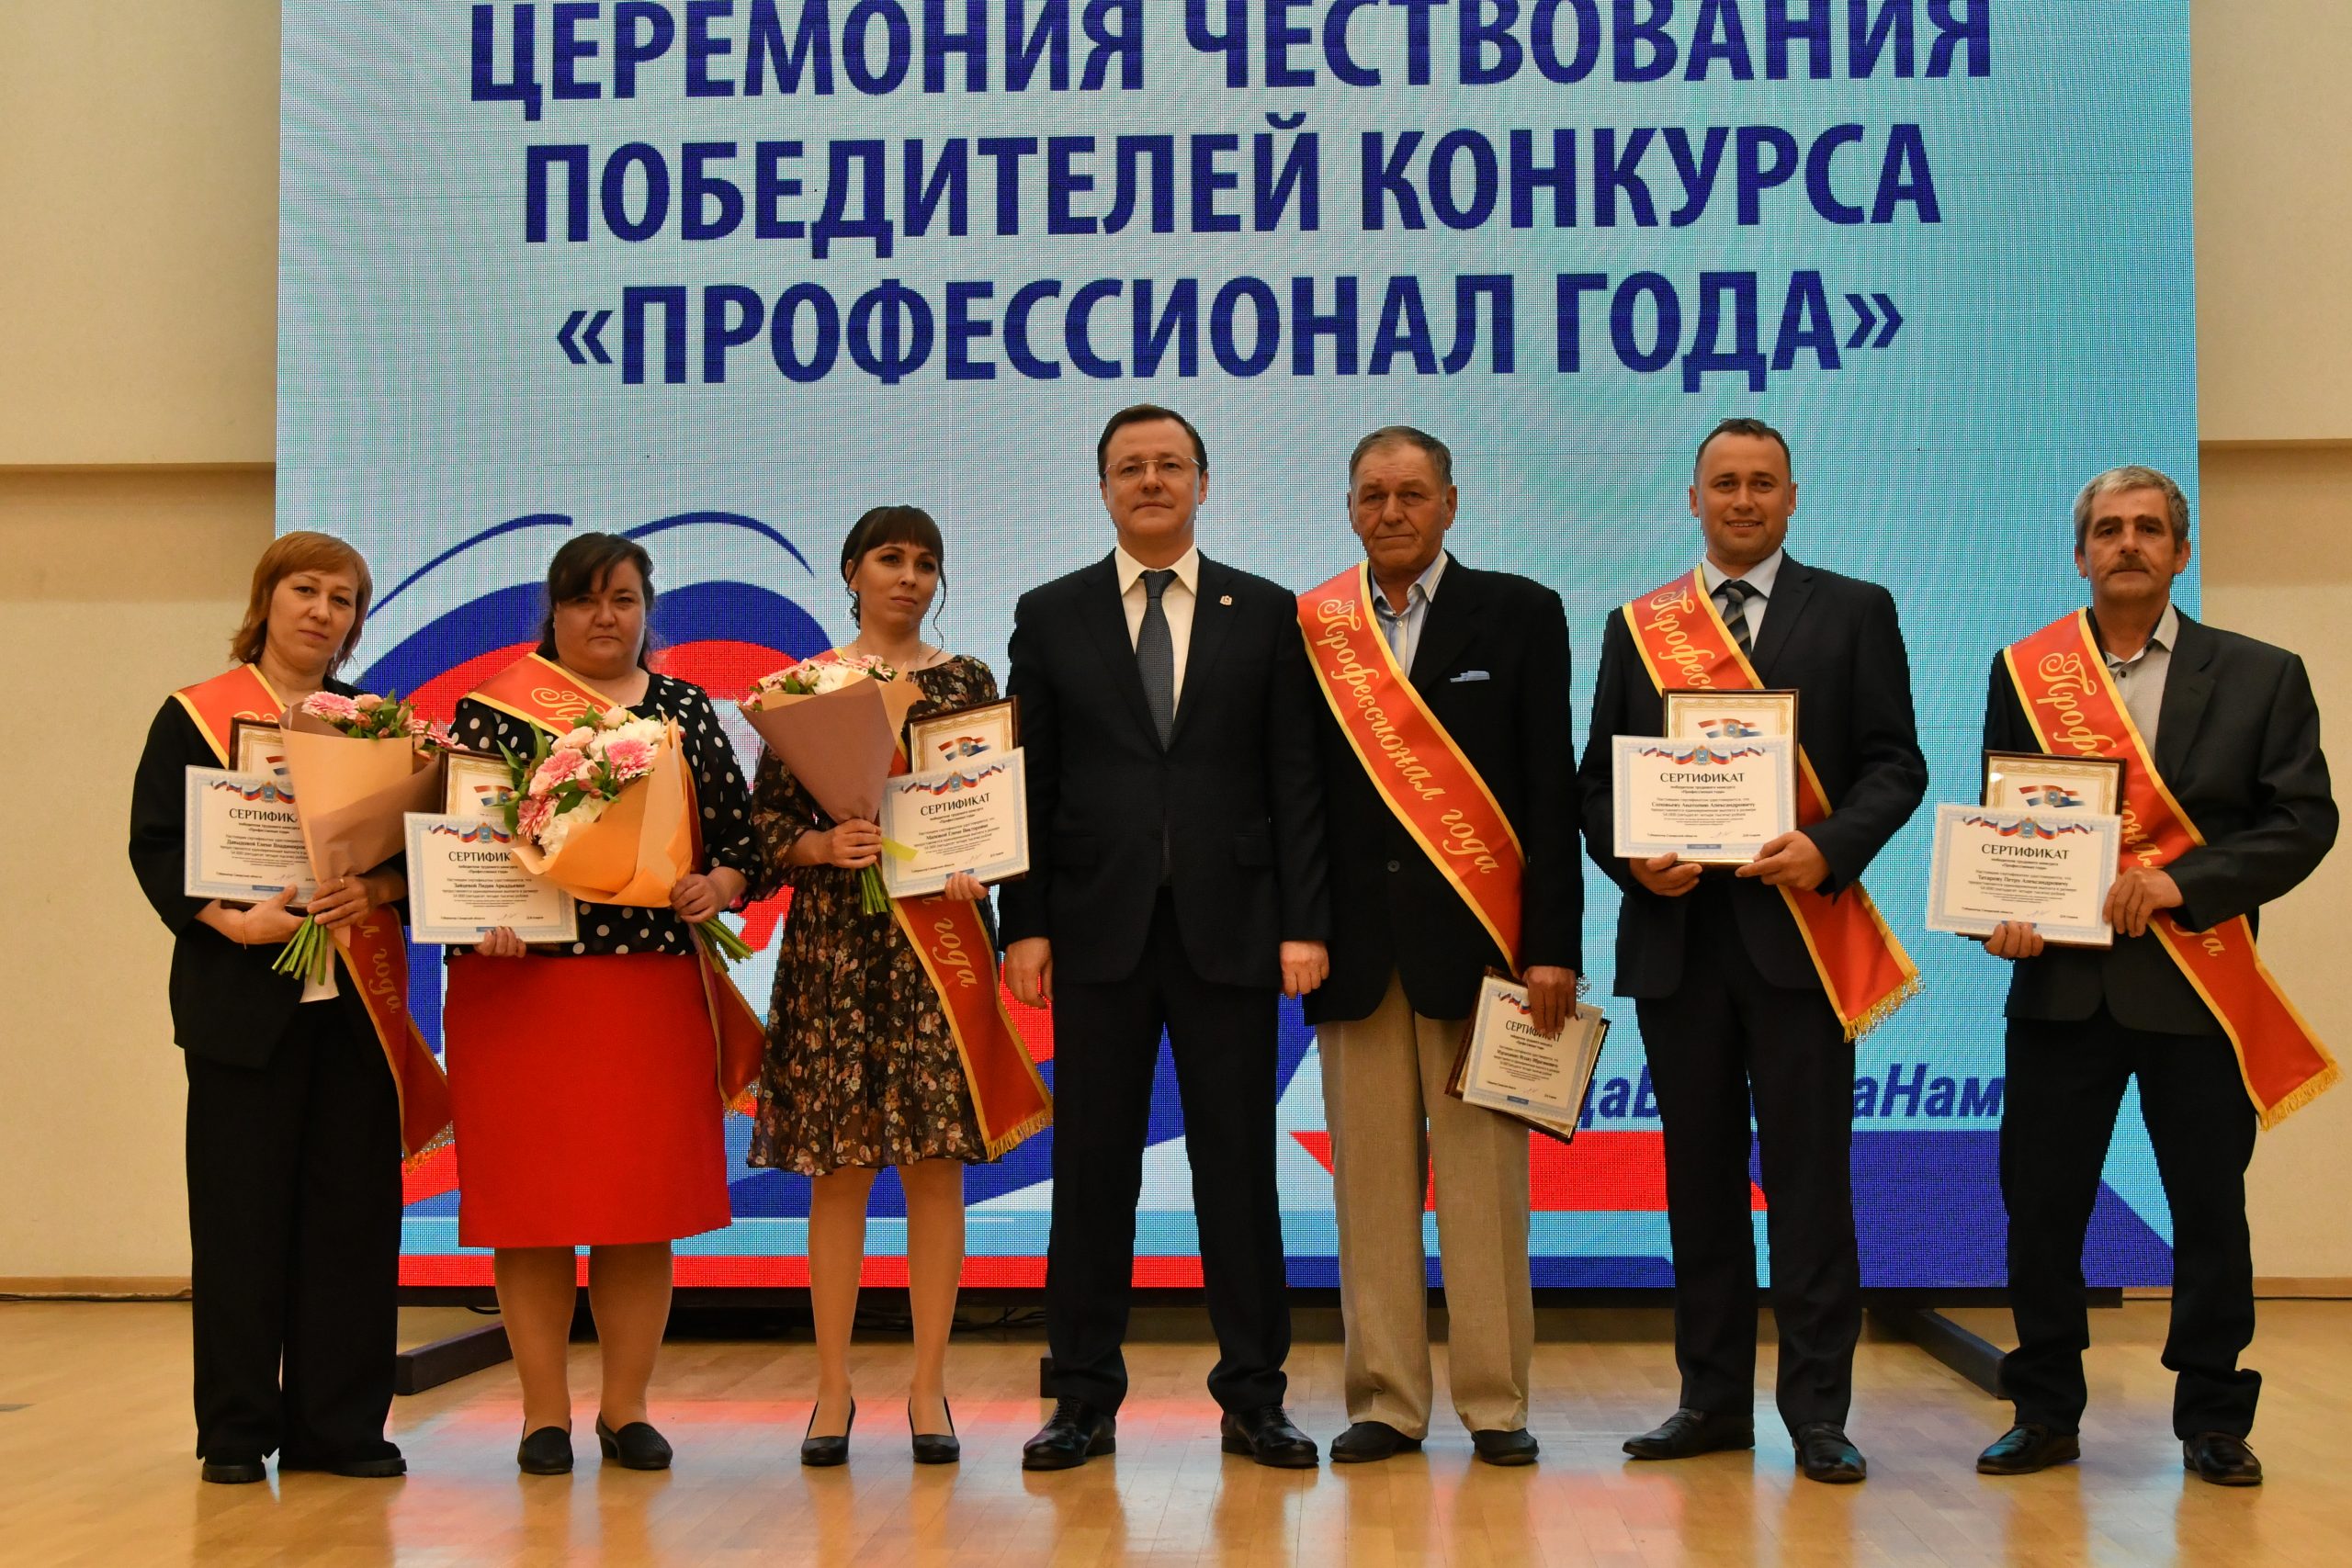 Дмитрий Азаров встретился с победителями конкурса «Профессионал года»